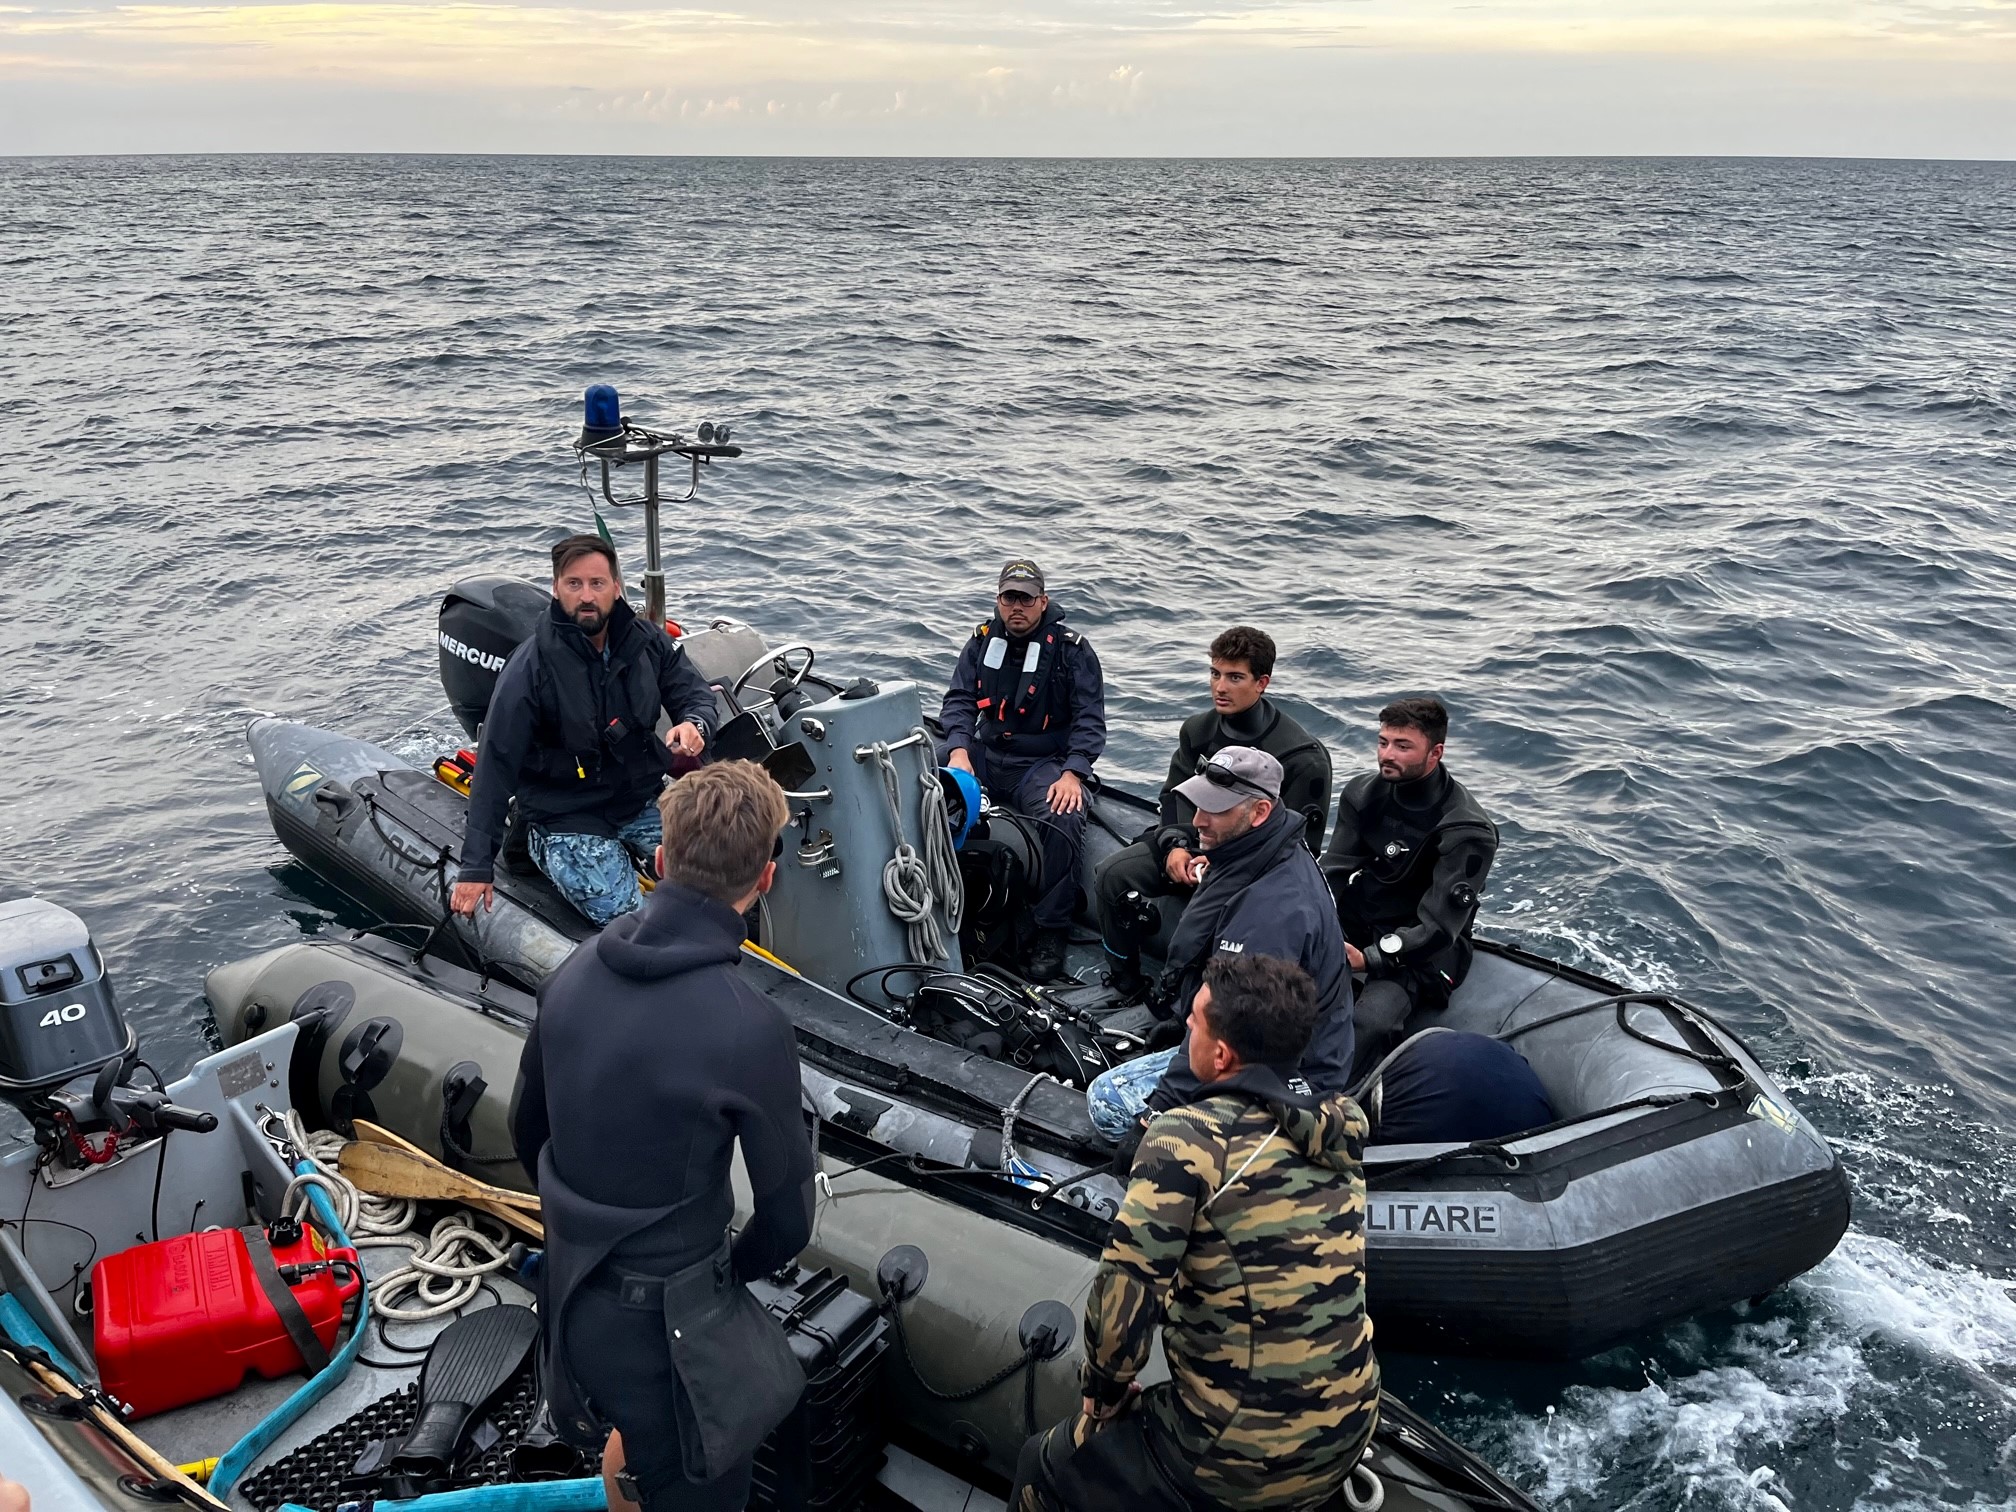  Le Pluton et le GPD Méditerranée participent à l’opération Fundali securi en Adriatique